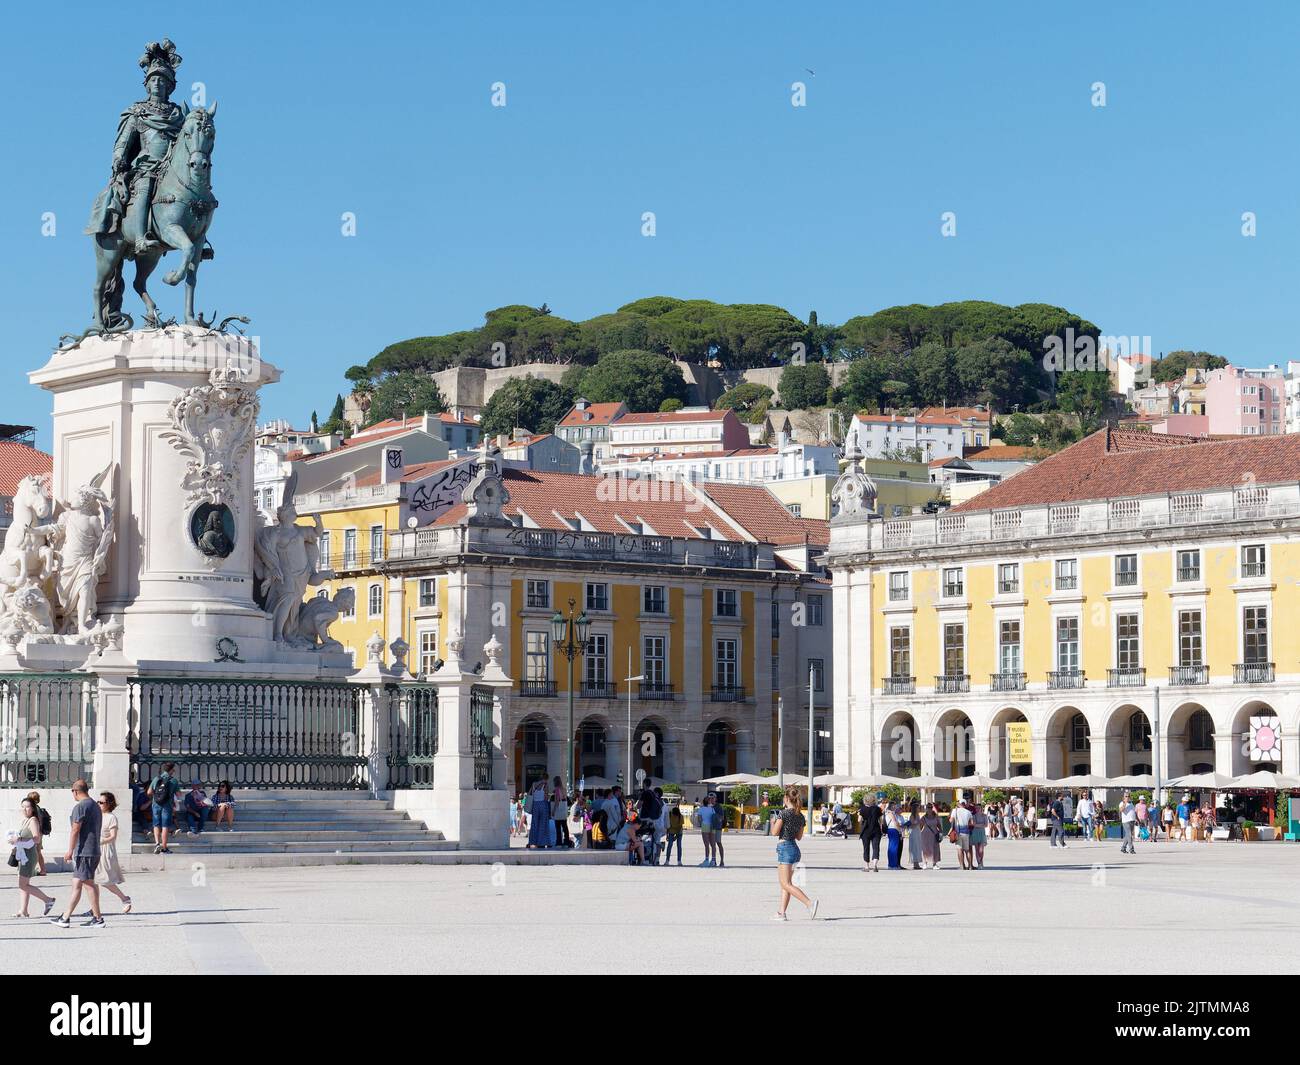 Praça do Comércio (place du Commerce) avec statue équestre et château de Saint-Jean George sur la colline derrière. Lisbonne, Portugal Banque D'Images